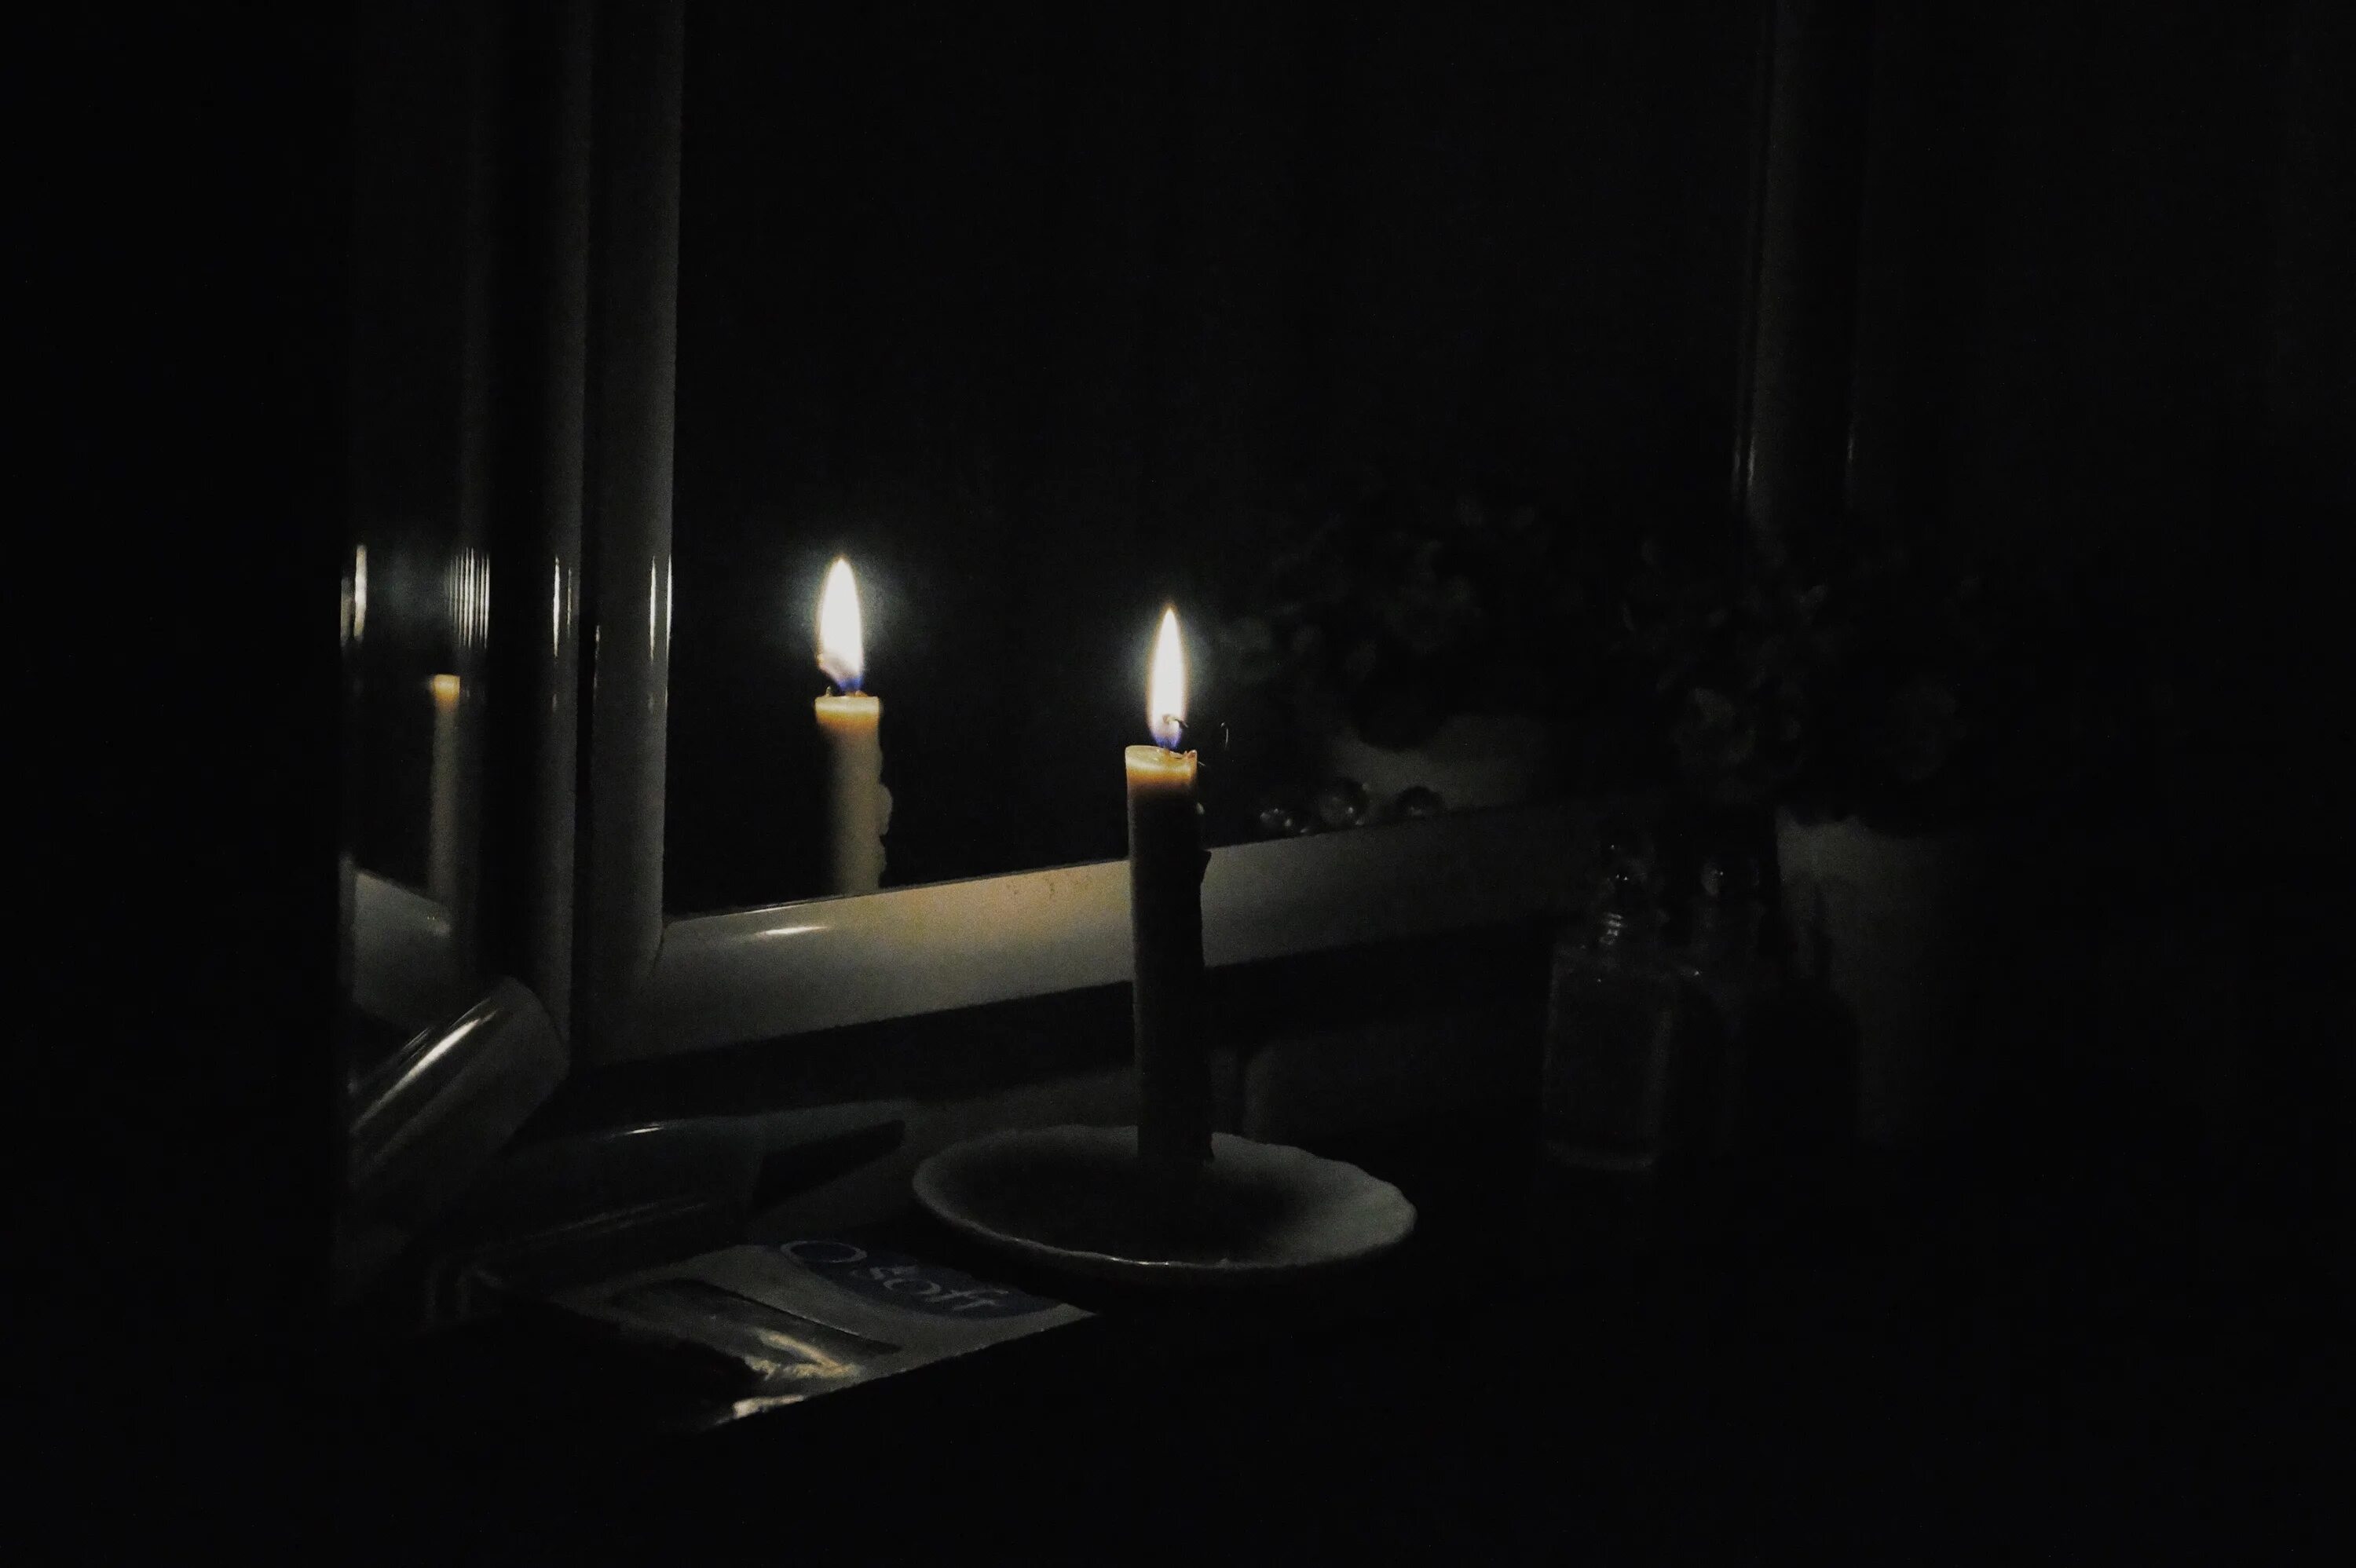 Горящая свеча гаснет в закрытой пробкой. Темная комната со свечами. Свеча в темноте. Комната со свечами. Человек со свечкой в темноте.